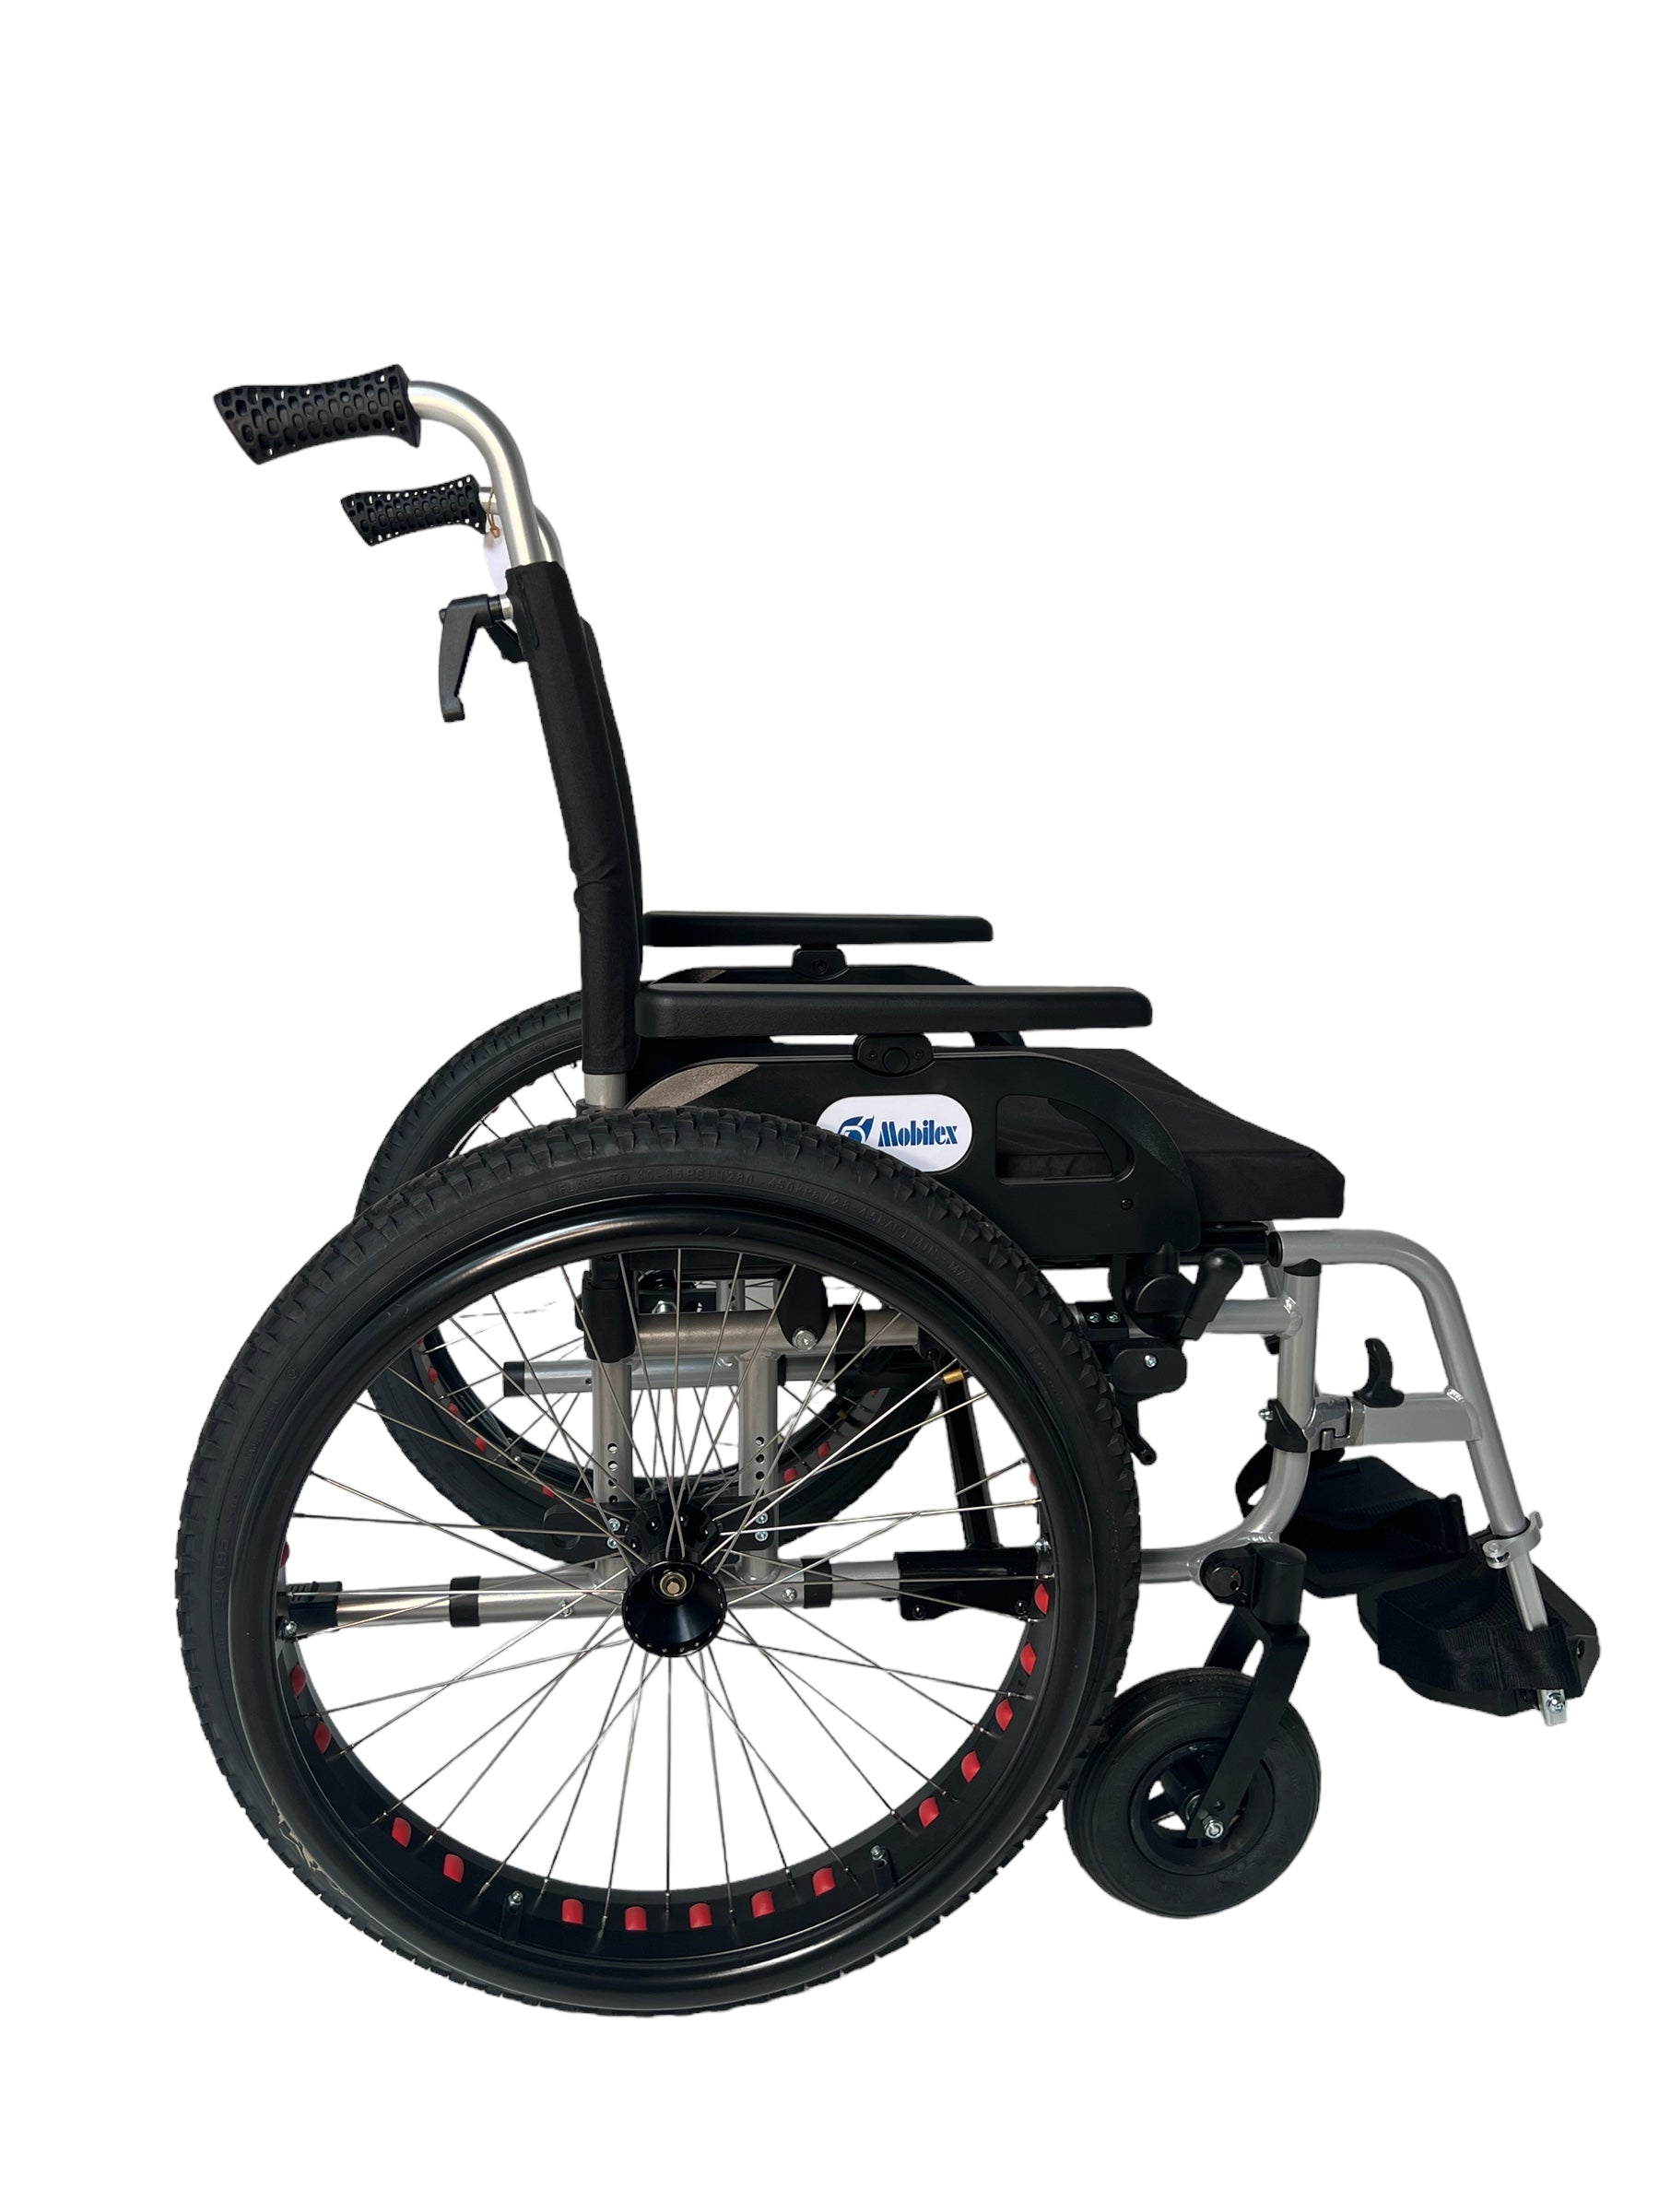 Billede af OFF-ROAD kørestol. Super lækker kørestol med terrængående dæk. 4 størrelser., 44 cm